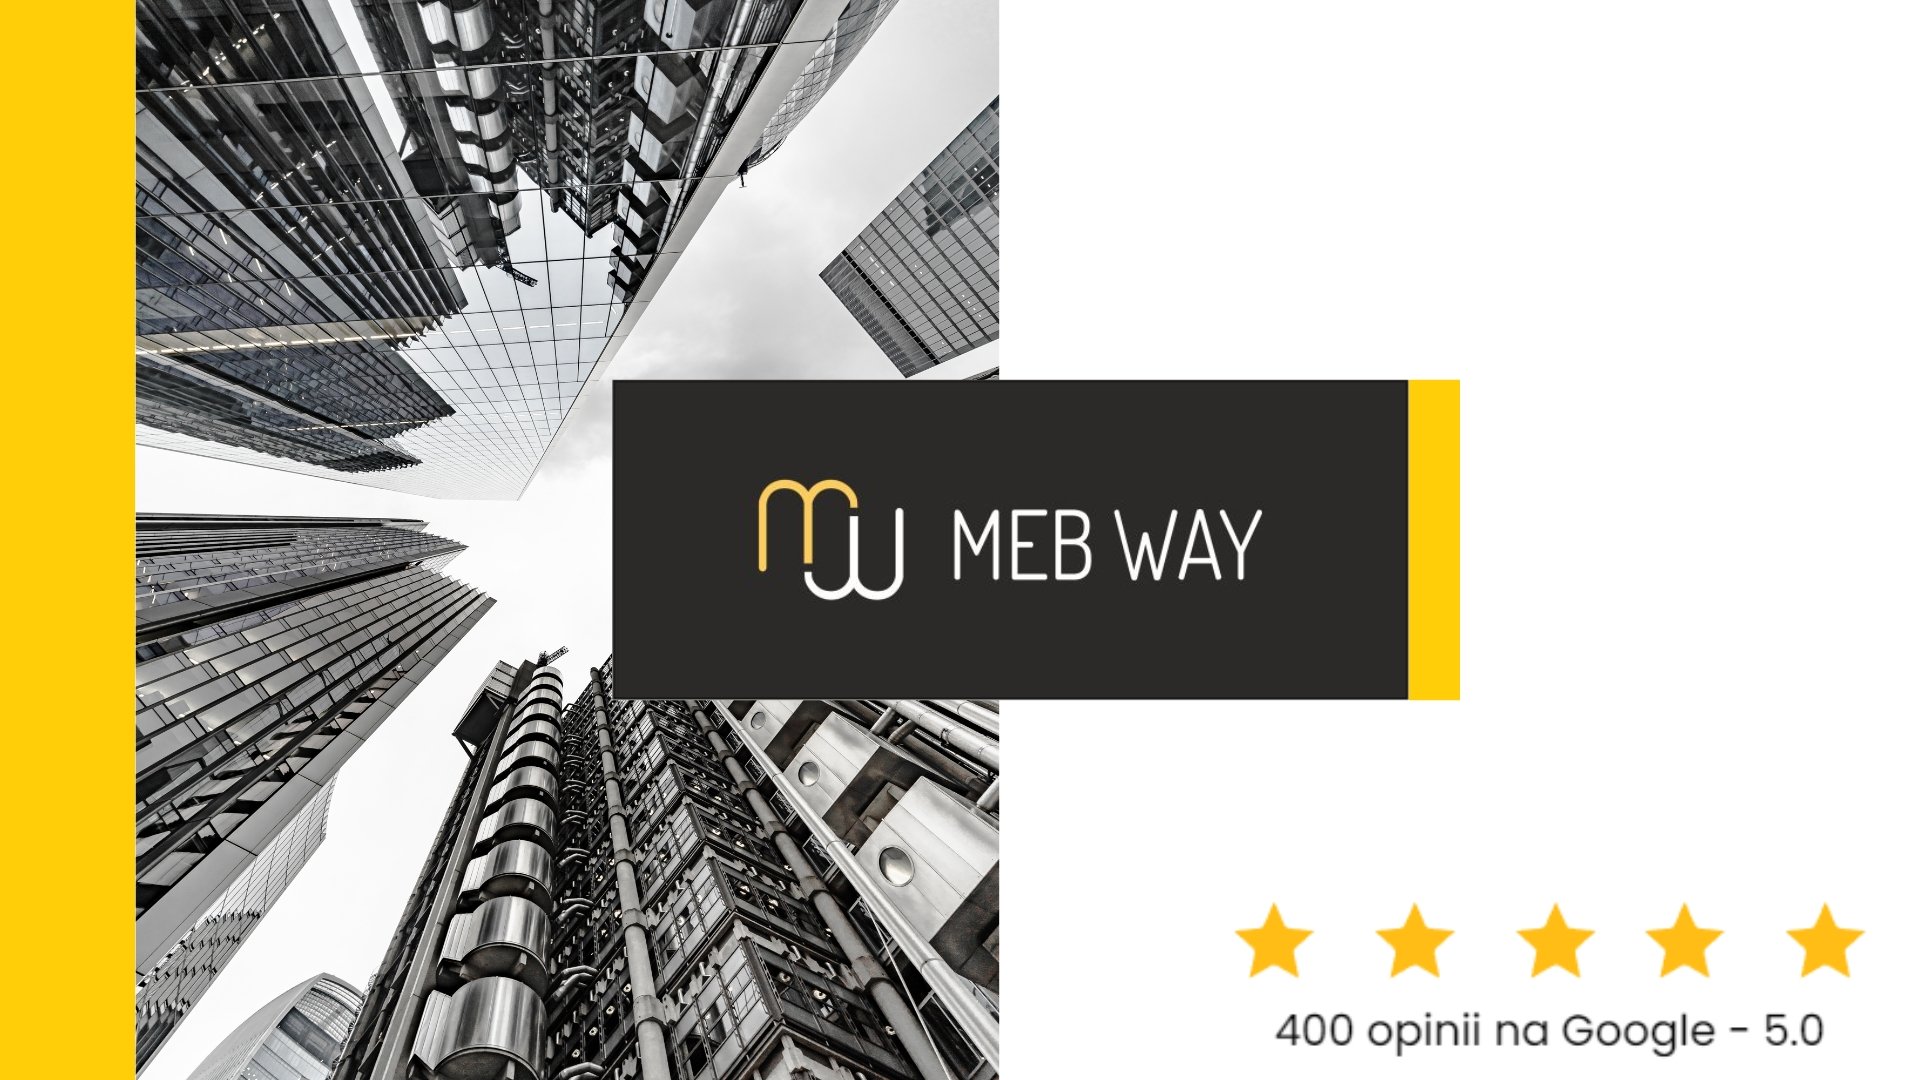 Meble dopasowane do Twoich potrzeb. Sprawdź, dlaczego warto wybrać właśnie MebWay – Zobacz opinie na temat naszej firmy. 